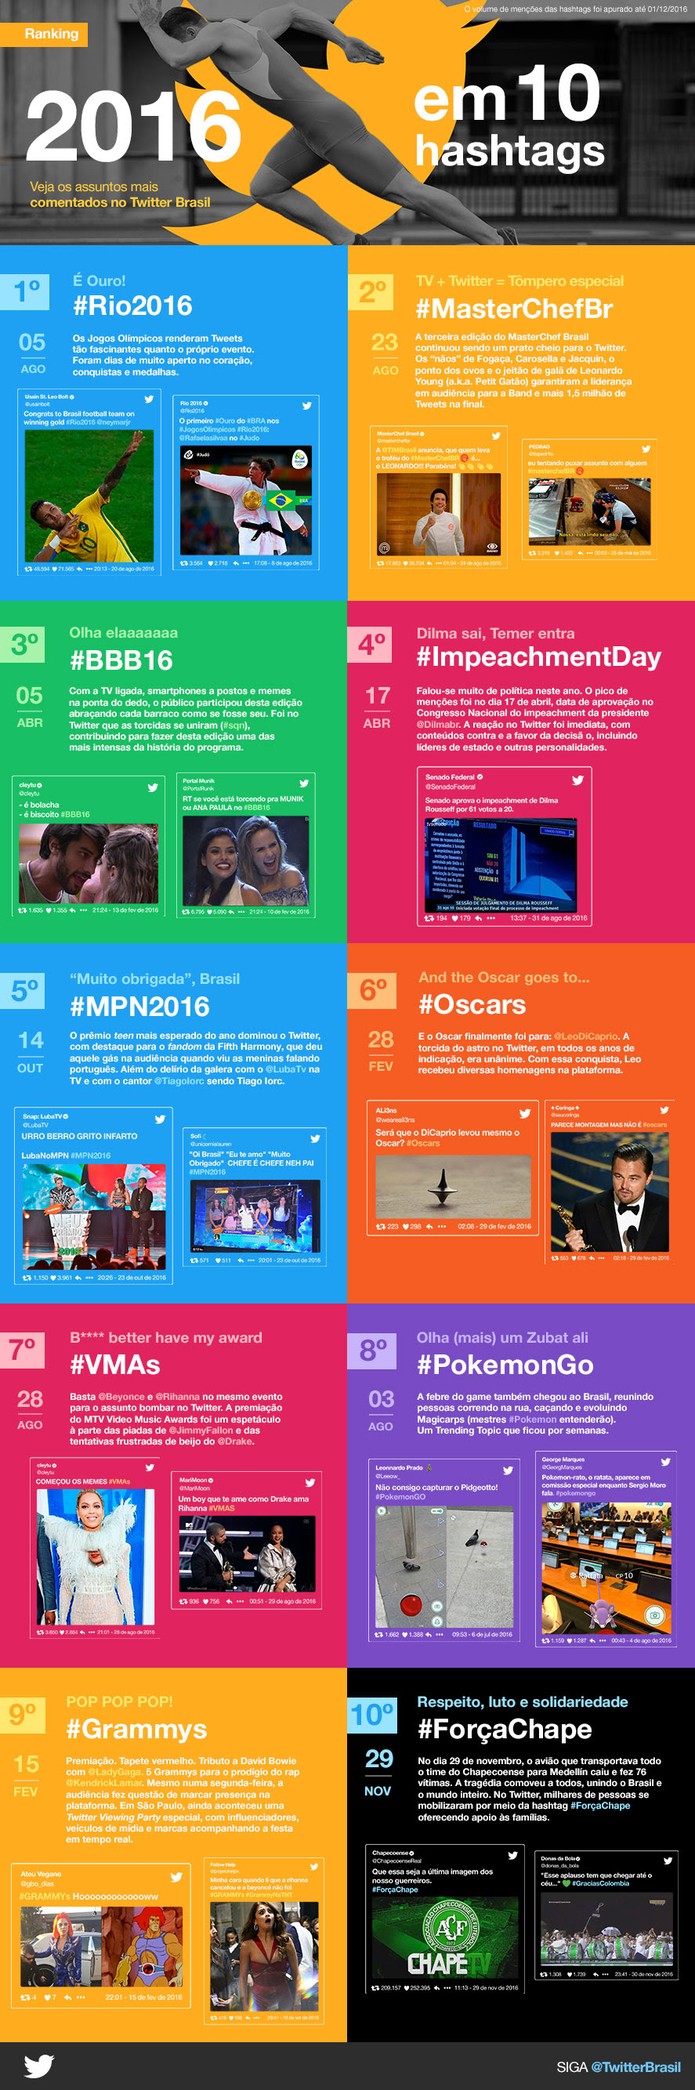 Twitter revela dados das hashtags mais importantes de 2016; veja lista (Foto: Divulgação/Twitter)